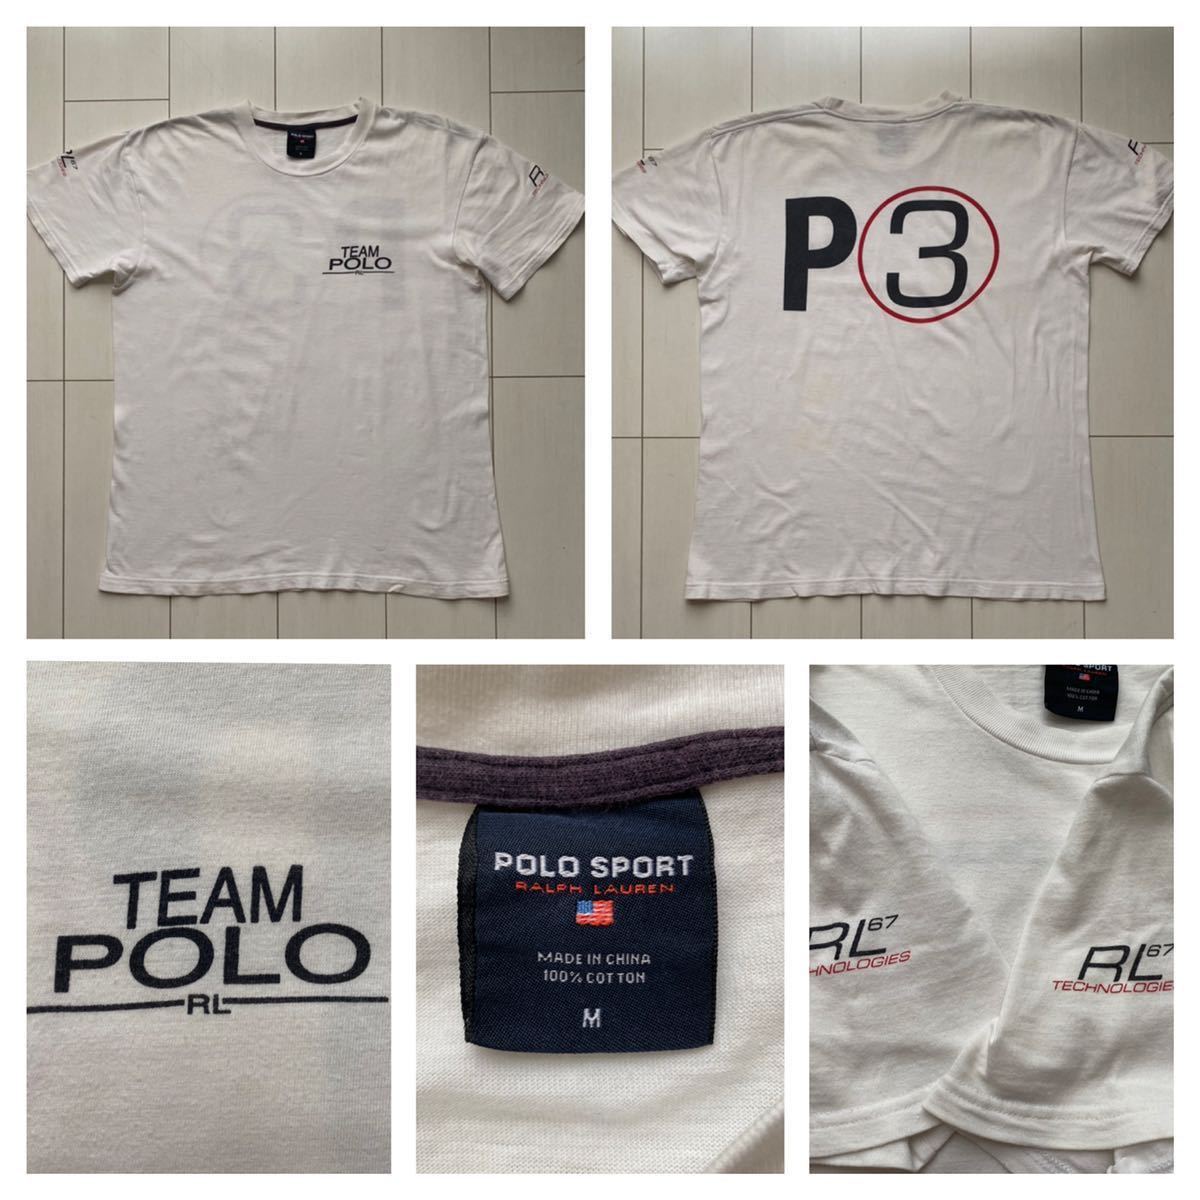 送料無料 90s polo sport ポロスポーツ ラルフローレン team technologies vintage ビンテージ Tシャツ  white ホワイト 白 RRL country 92